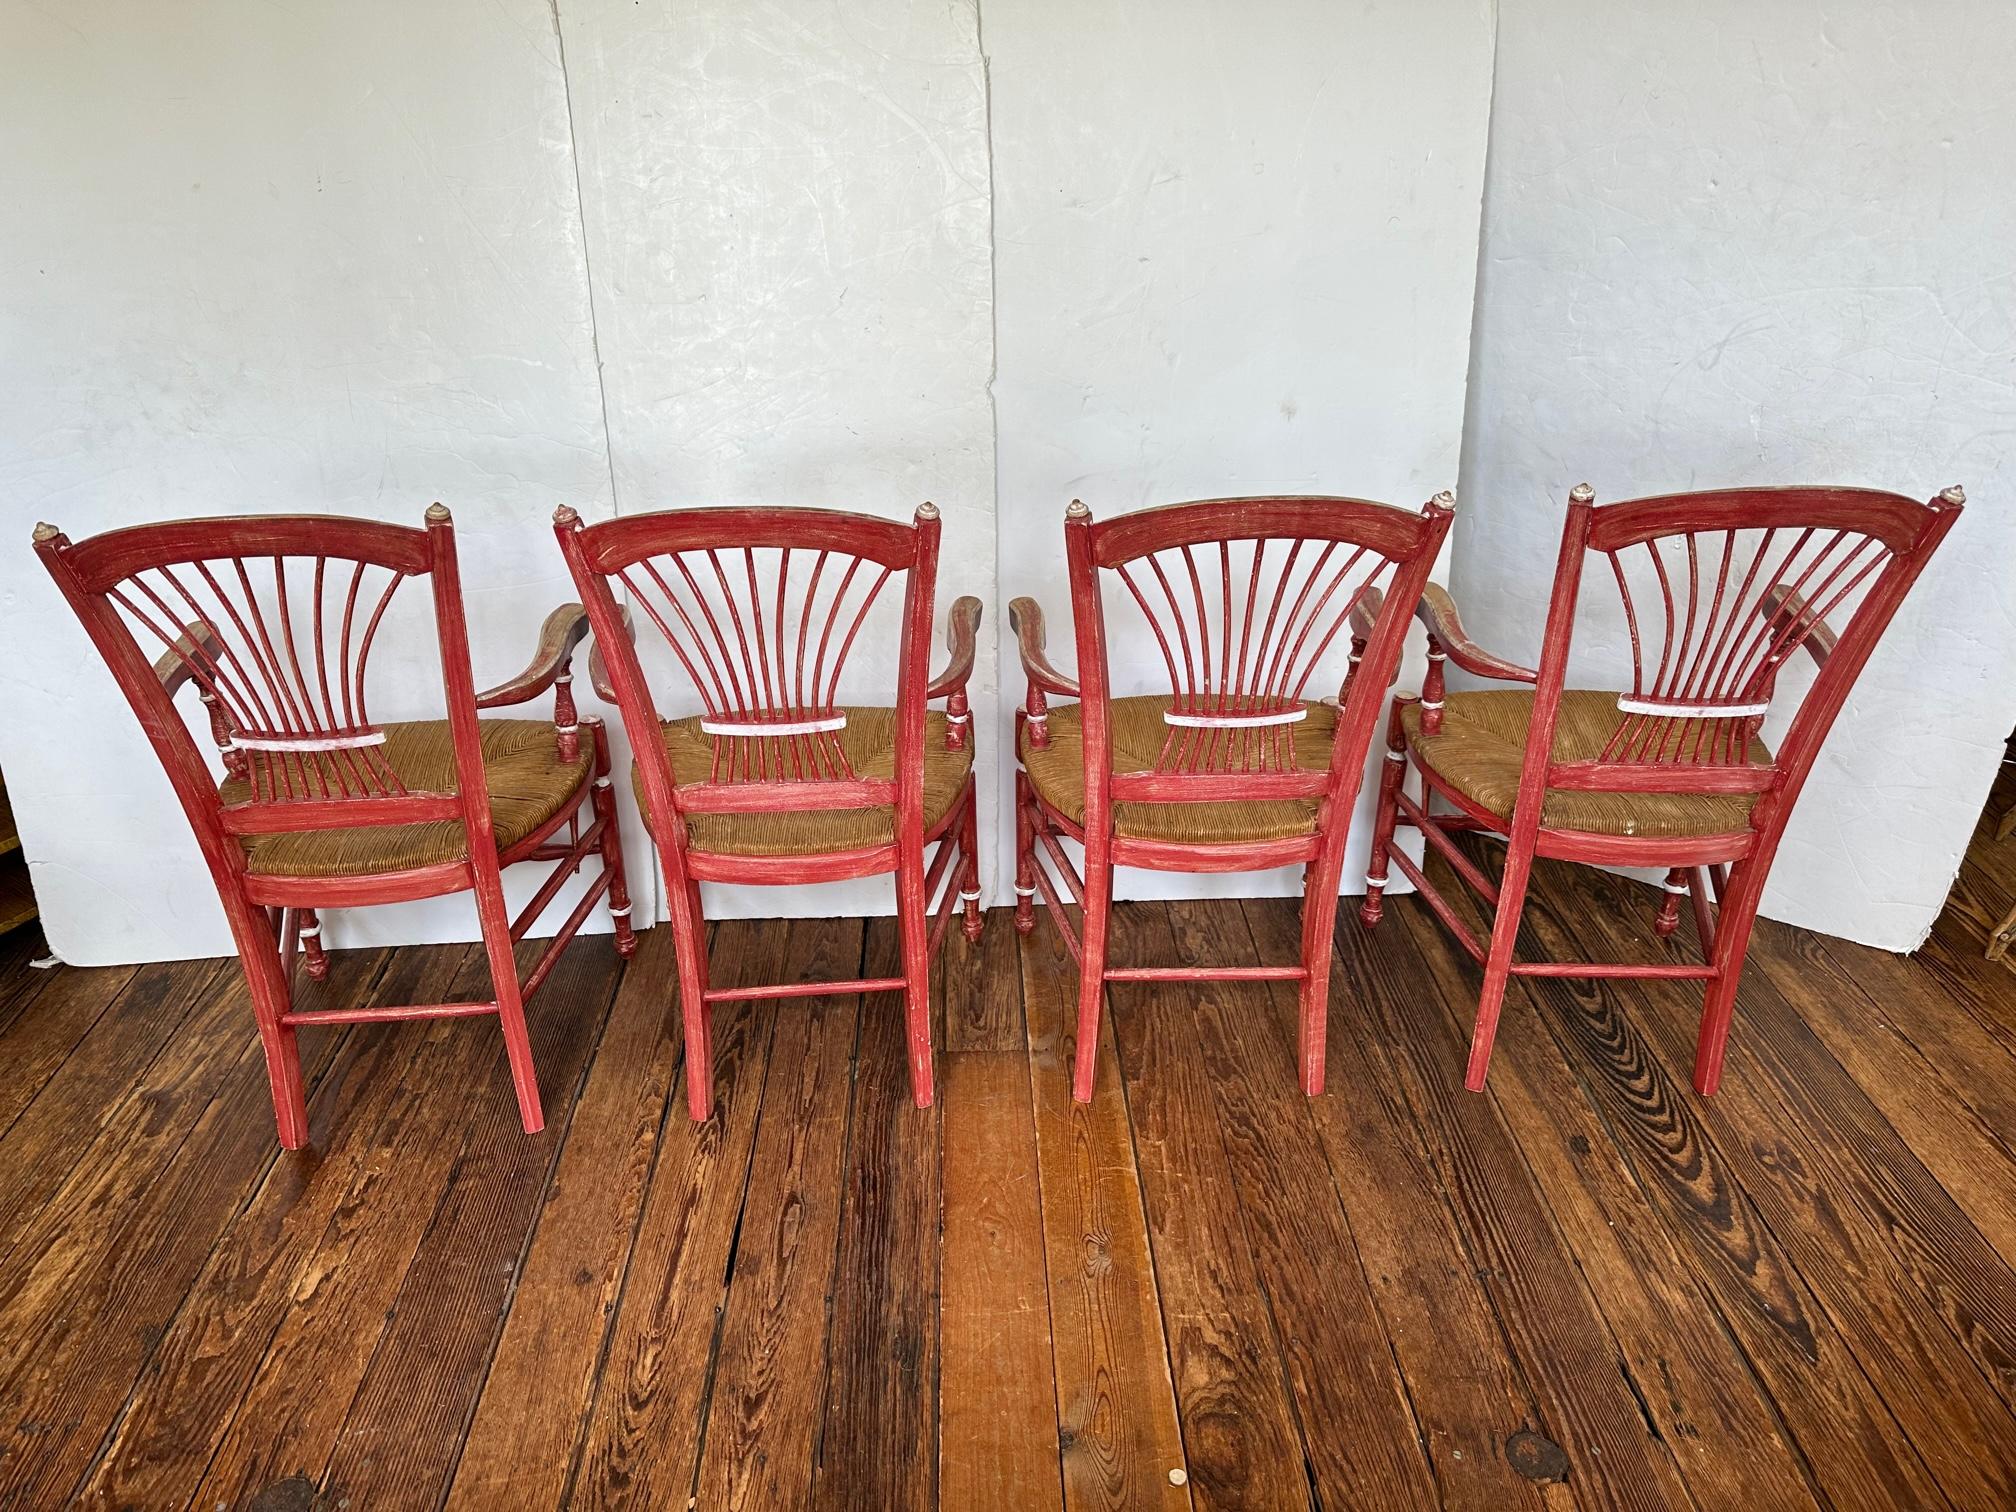 4 Stühle im französischen Landhausstil, allesamt Armlehnstühle, mit wunderschönen Spindelrücken im Weizengarbenstil und natürlichen Binsensitzen.  Sie sind in Himbeerrot lackiert und mit silbernen Details verziert.